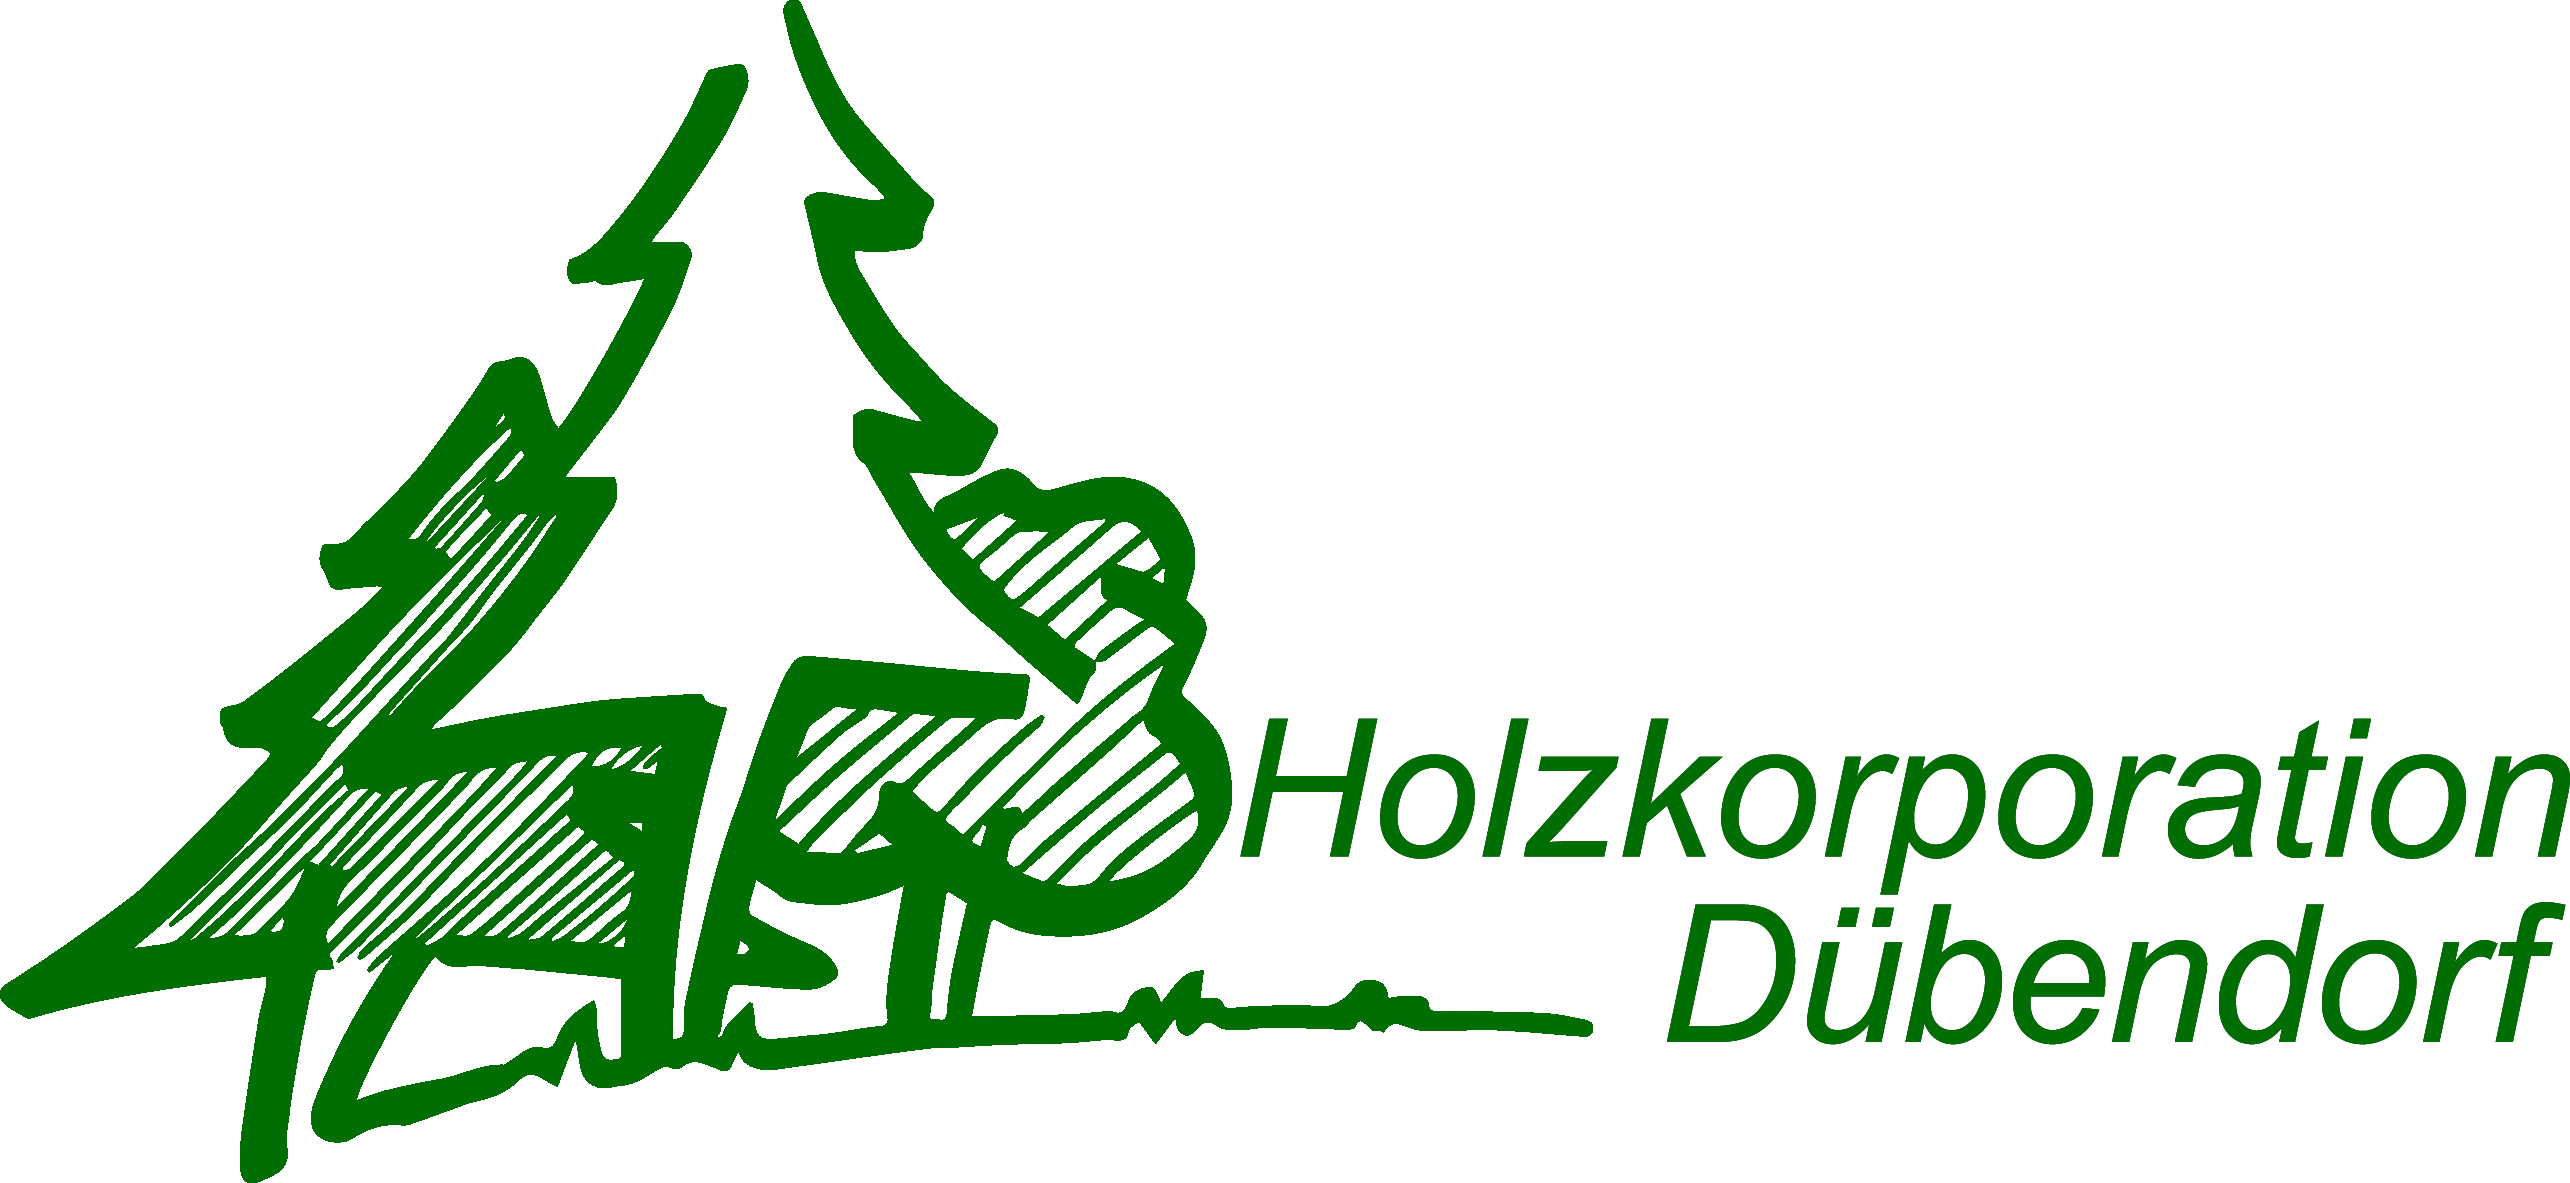 Logo HKD